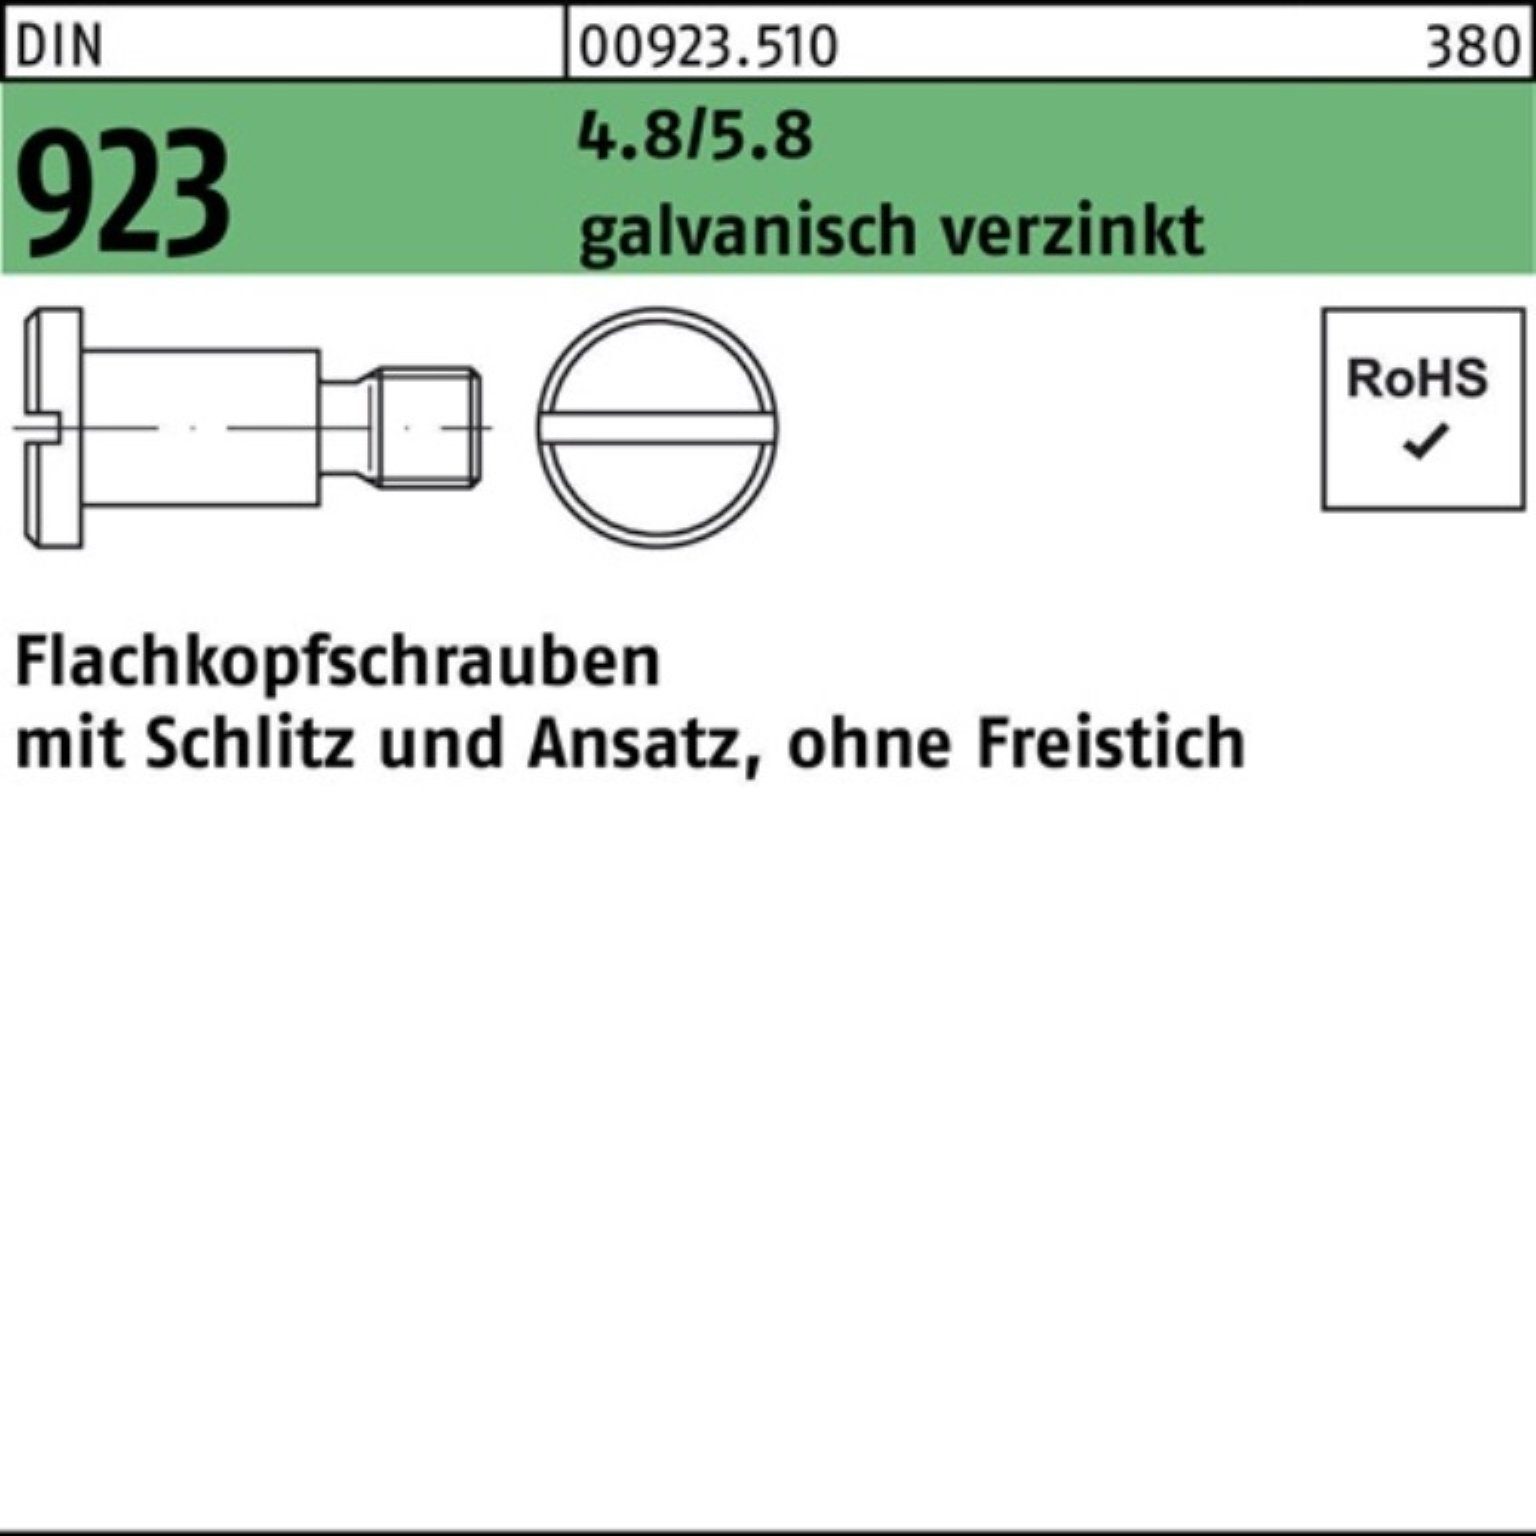 DIN Schraube Schlitz/Ansatz 923 g 4.8/5.8 M5x5x7,0 Pack Flachkopfschraube 100er Reyher